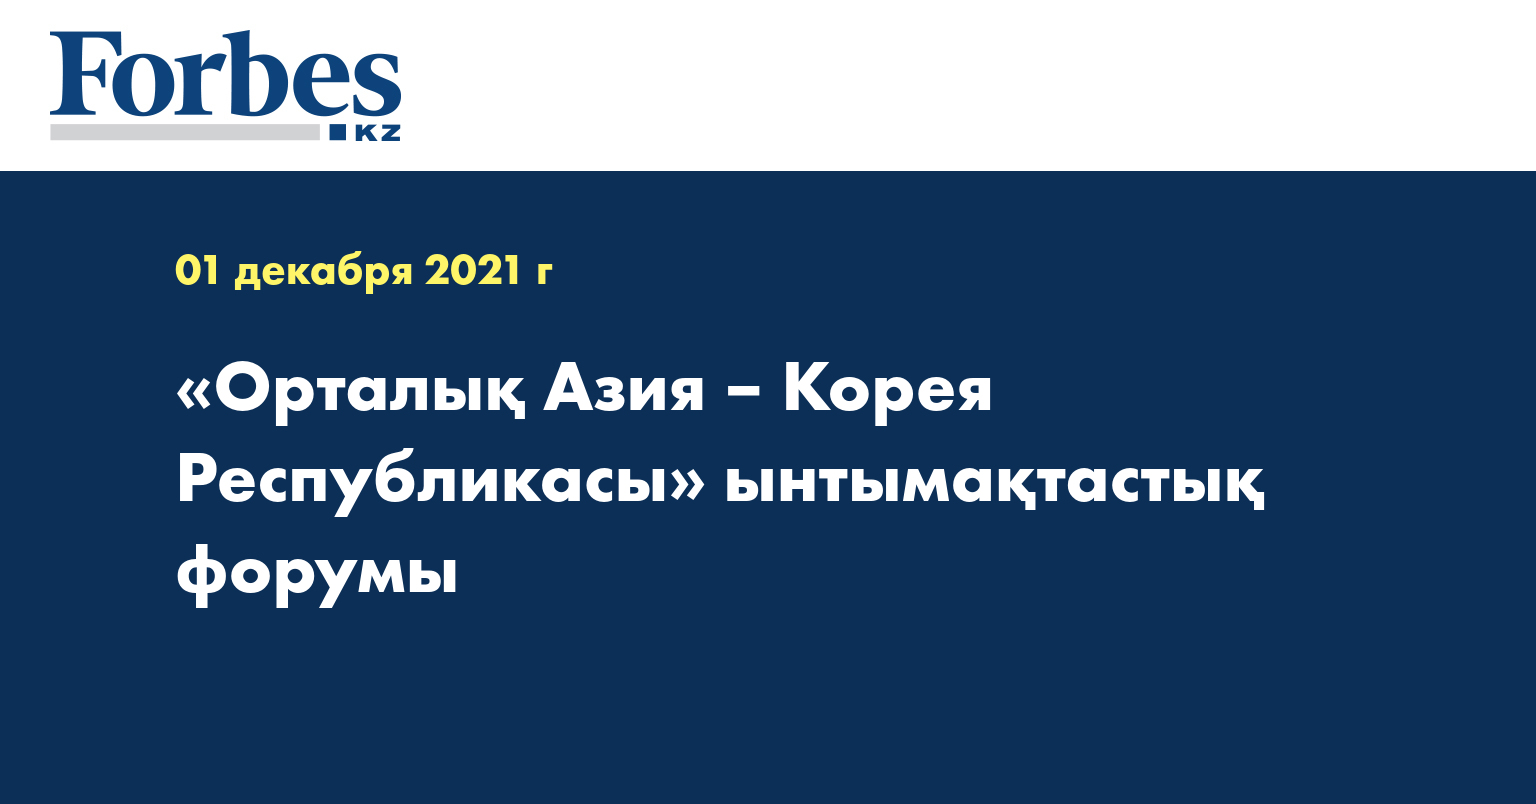 «Орталық Азия – Корея Республикасы» ынтымақтастық форумы 